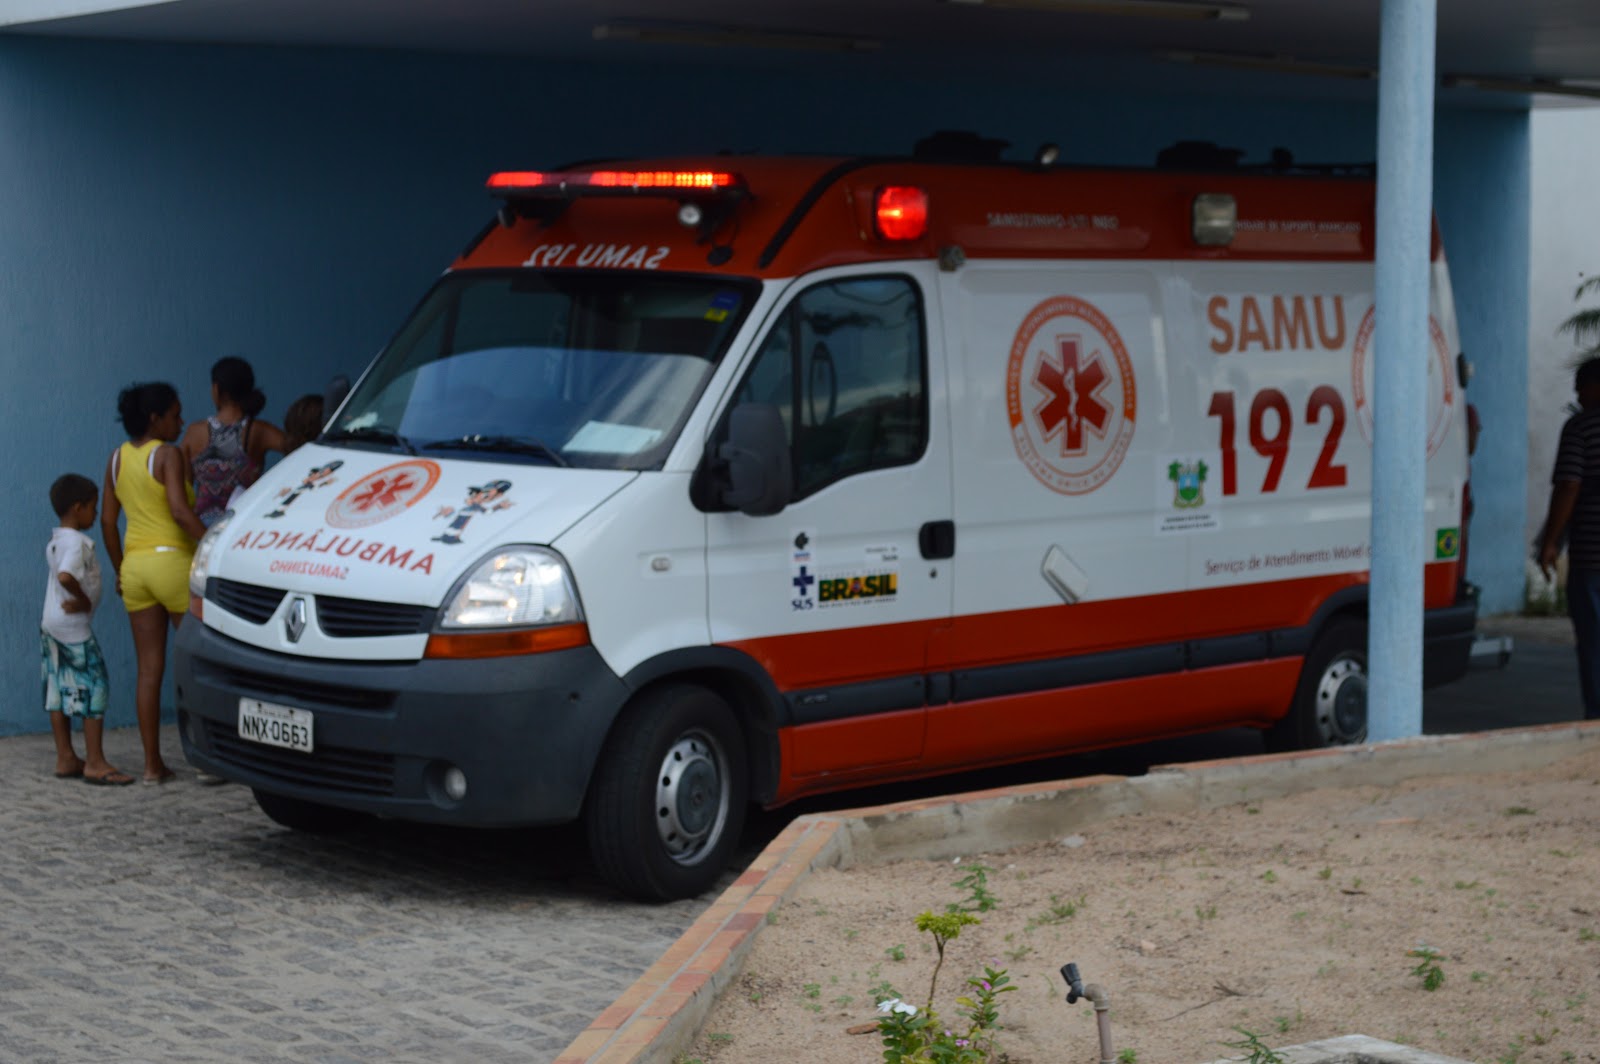 Resultado de imagem para ambulancia tangara